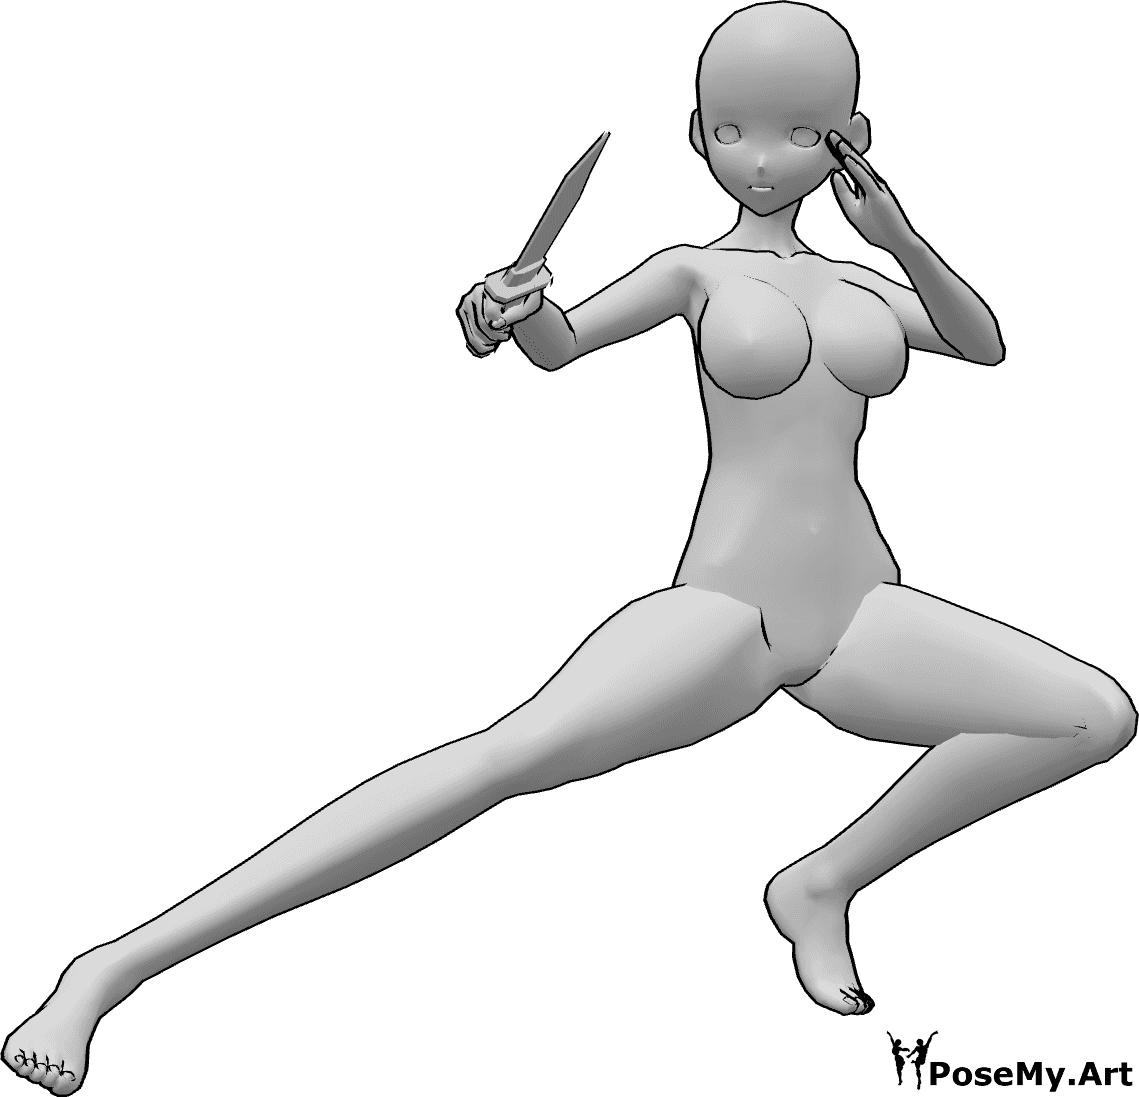 Referencia de poses- Anime en cuclillas cuchillo pose - Mujer anime está en cuclillas y sostiene un cuchillo en su mano derecha